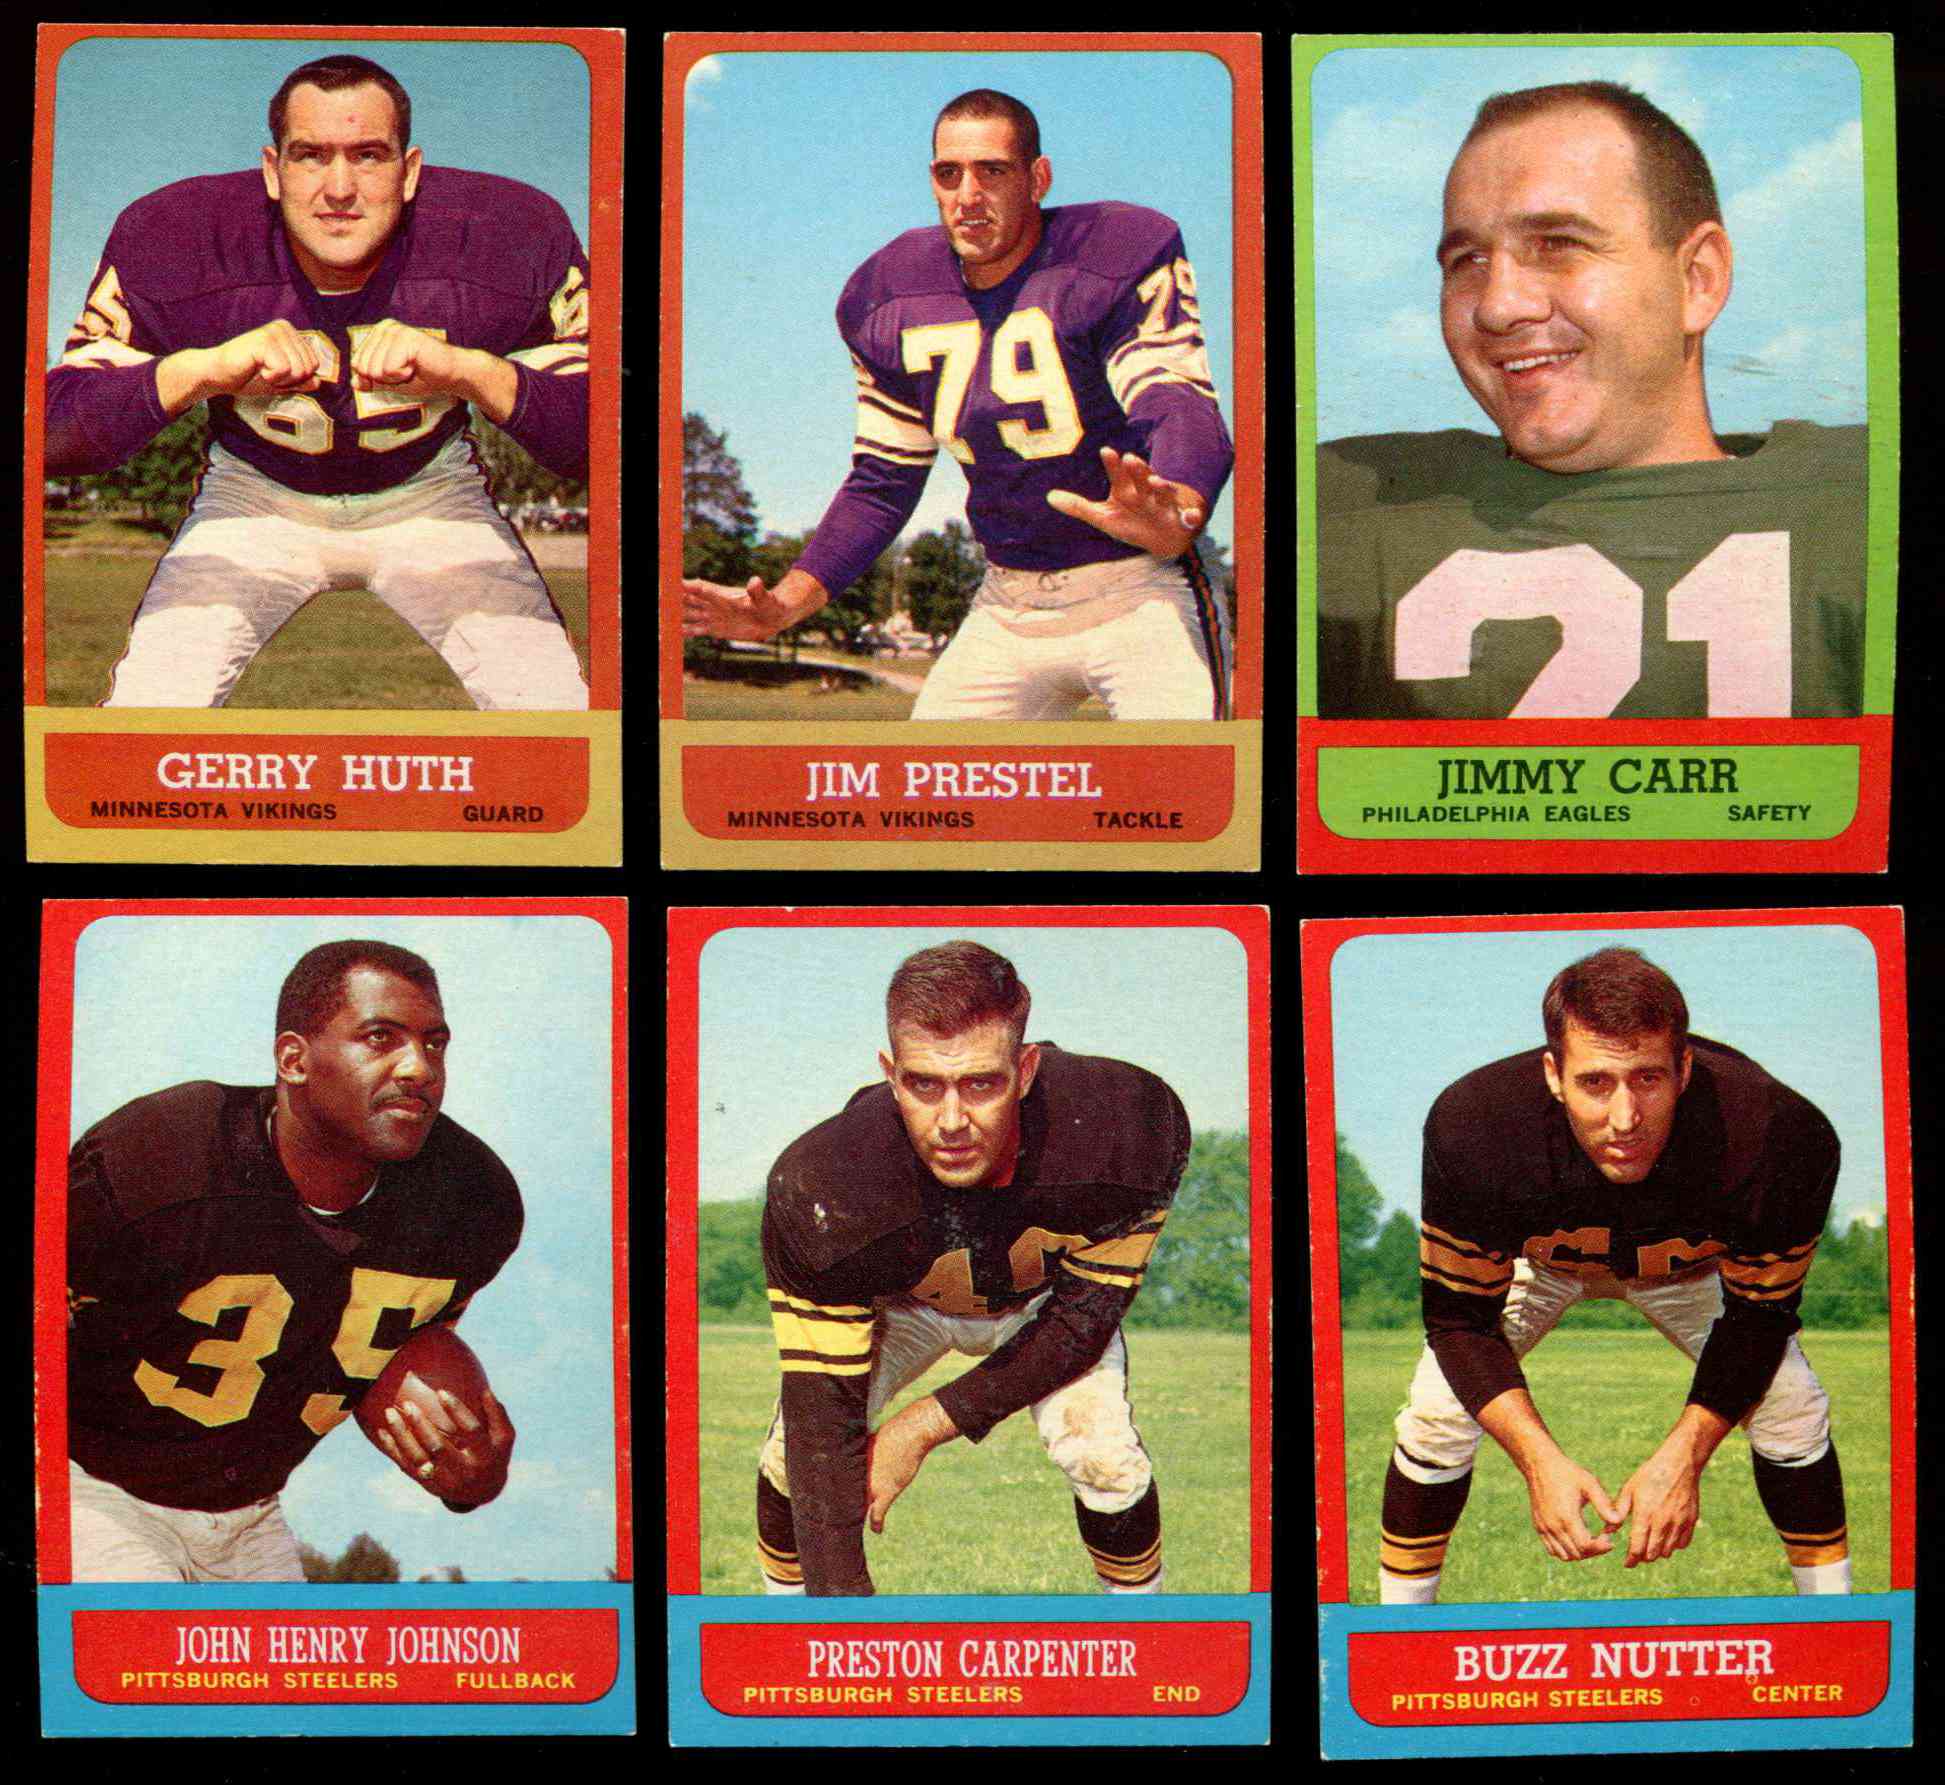 1963 Topps FB #123 John Henry Johnson SHORT PRINT (Steelers) Football cards value